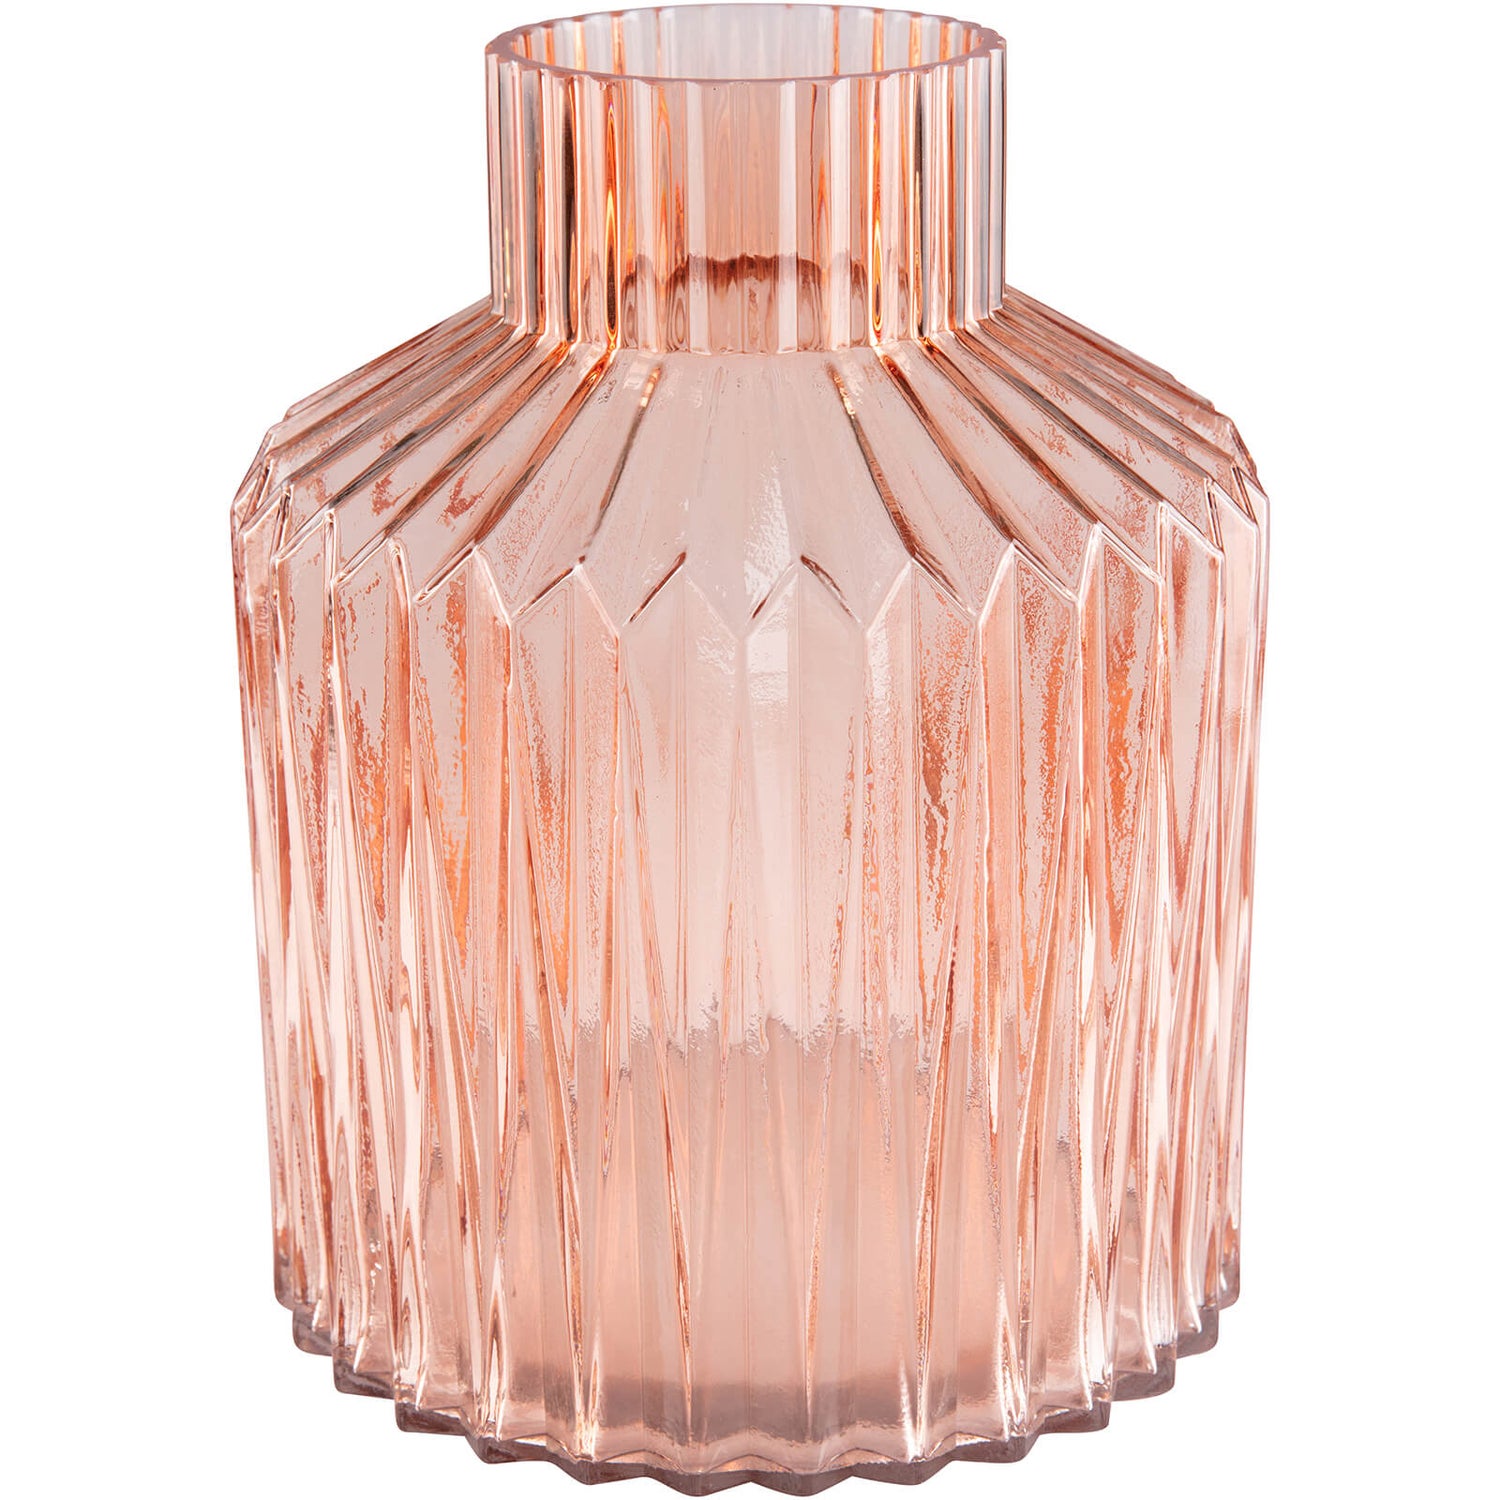 Day Birger et Mikkelsen Home Glass Vase - Tea Rose - Large